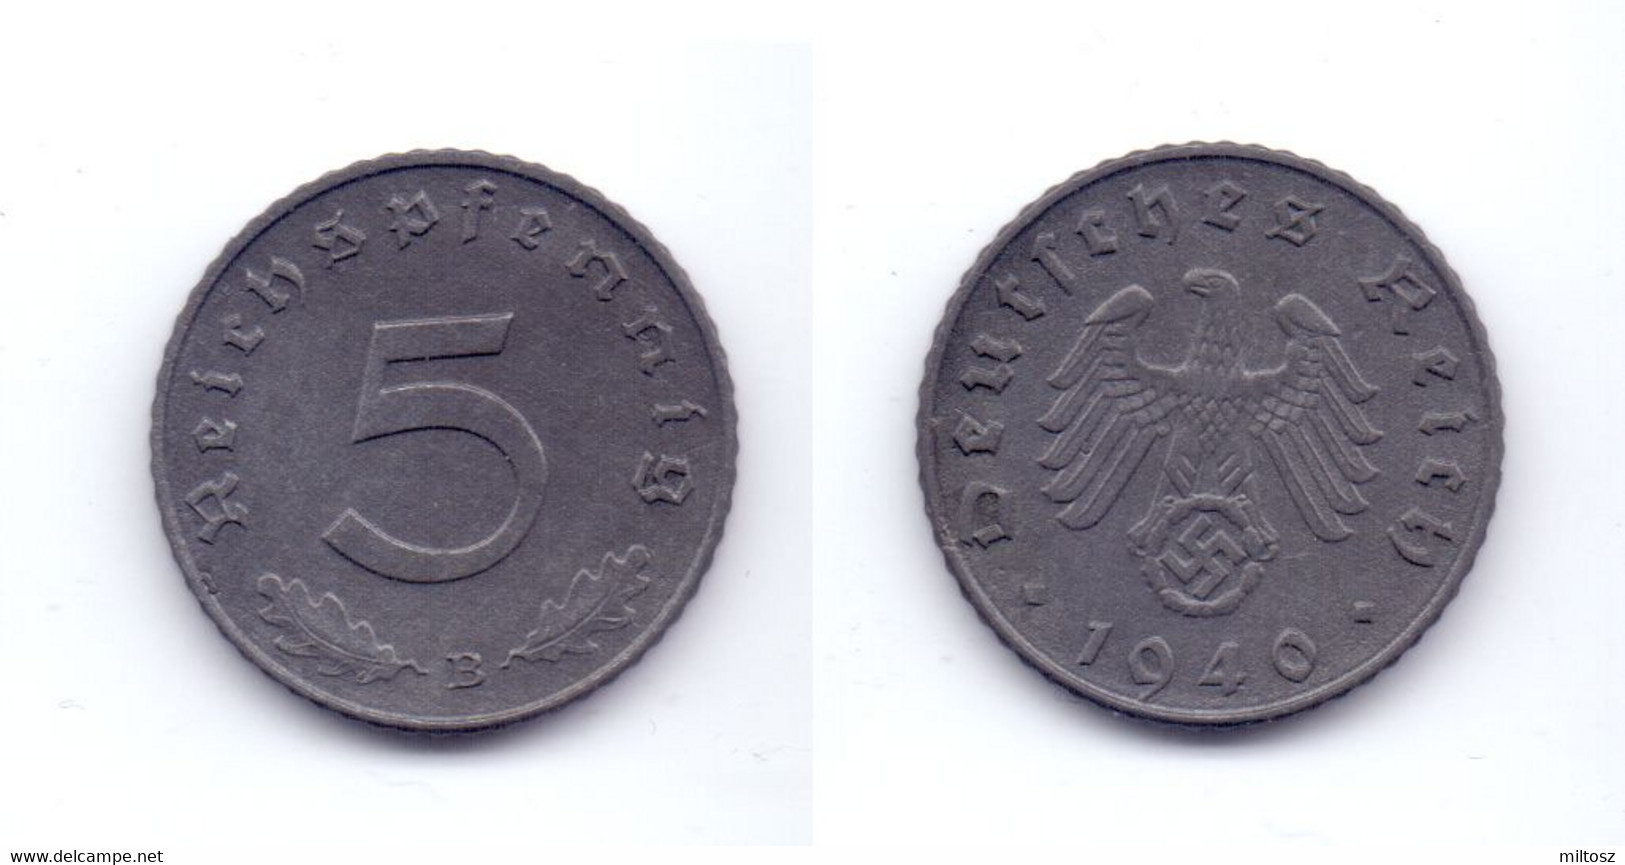 Germany 5 Reichspfennig 1940 B WWII Issue - 5 Reichspfennig